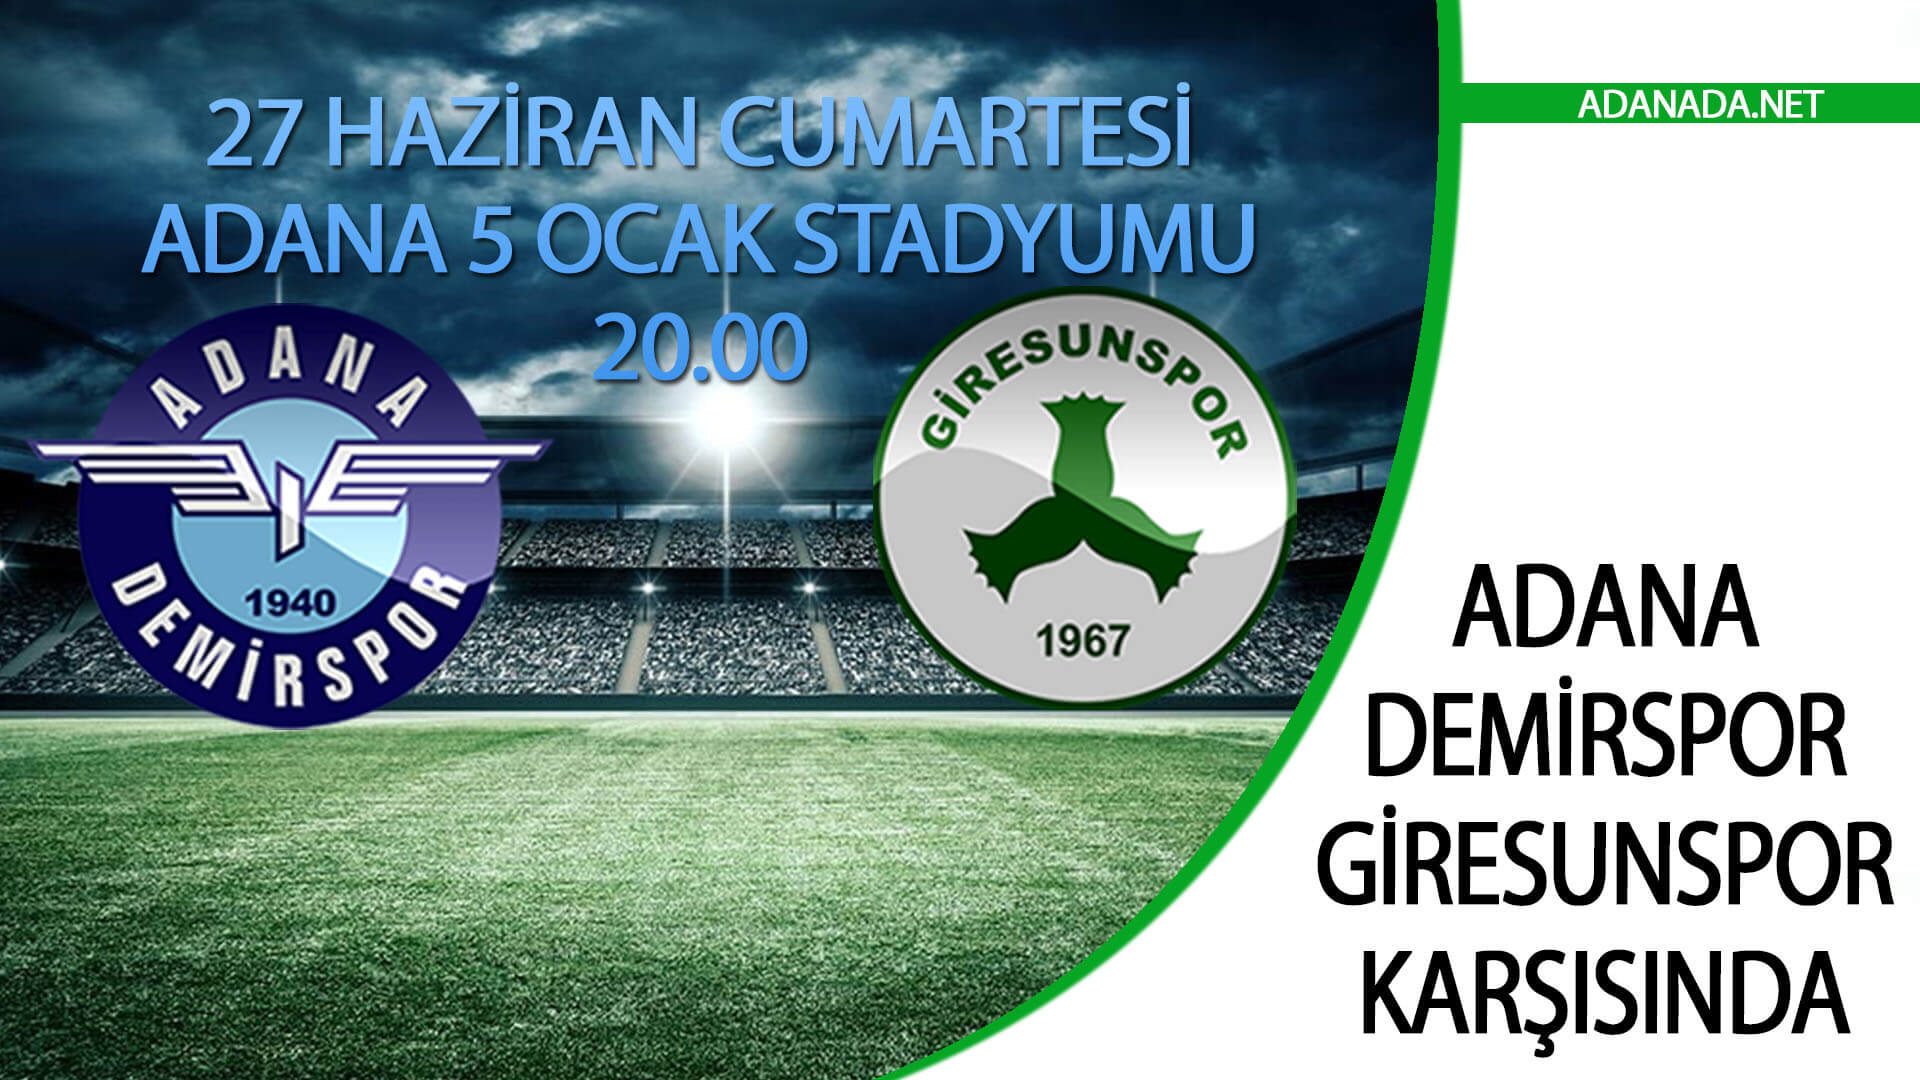 Adana Demirspor, Giresunspor Karşısında